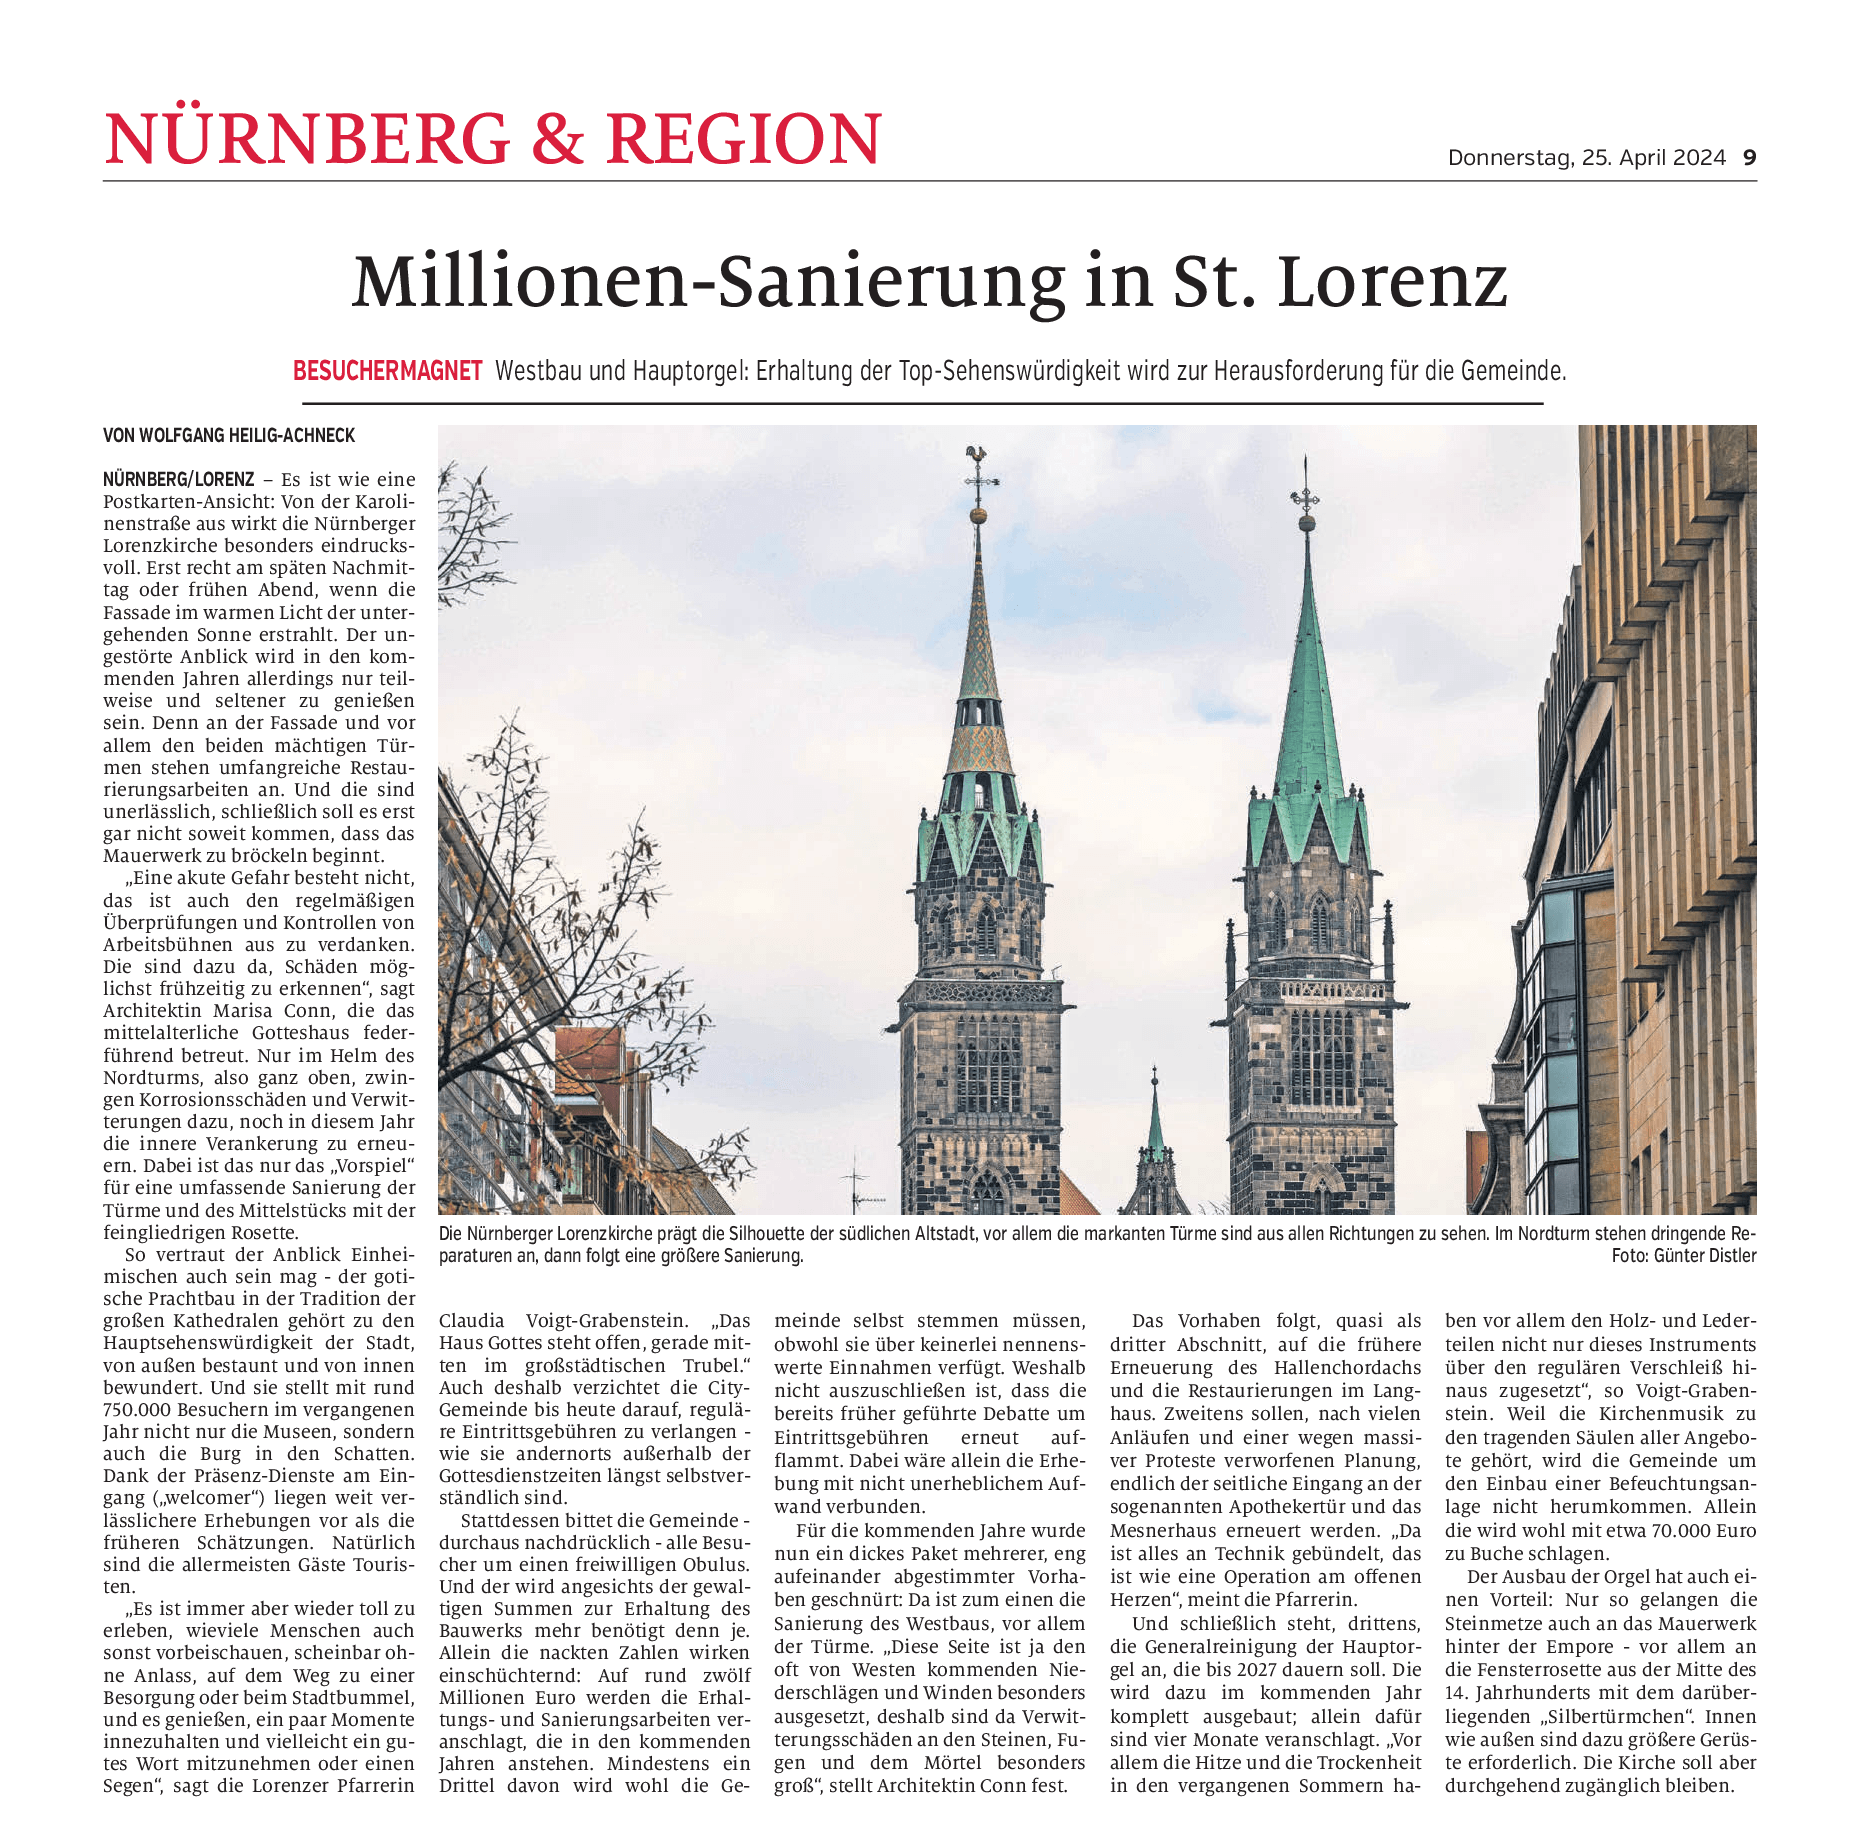 Artikel aus den Nürnberger Nachrichten. Titel: Millionen-Sanierung in St. Lorenz (25. April 2024)